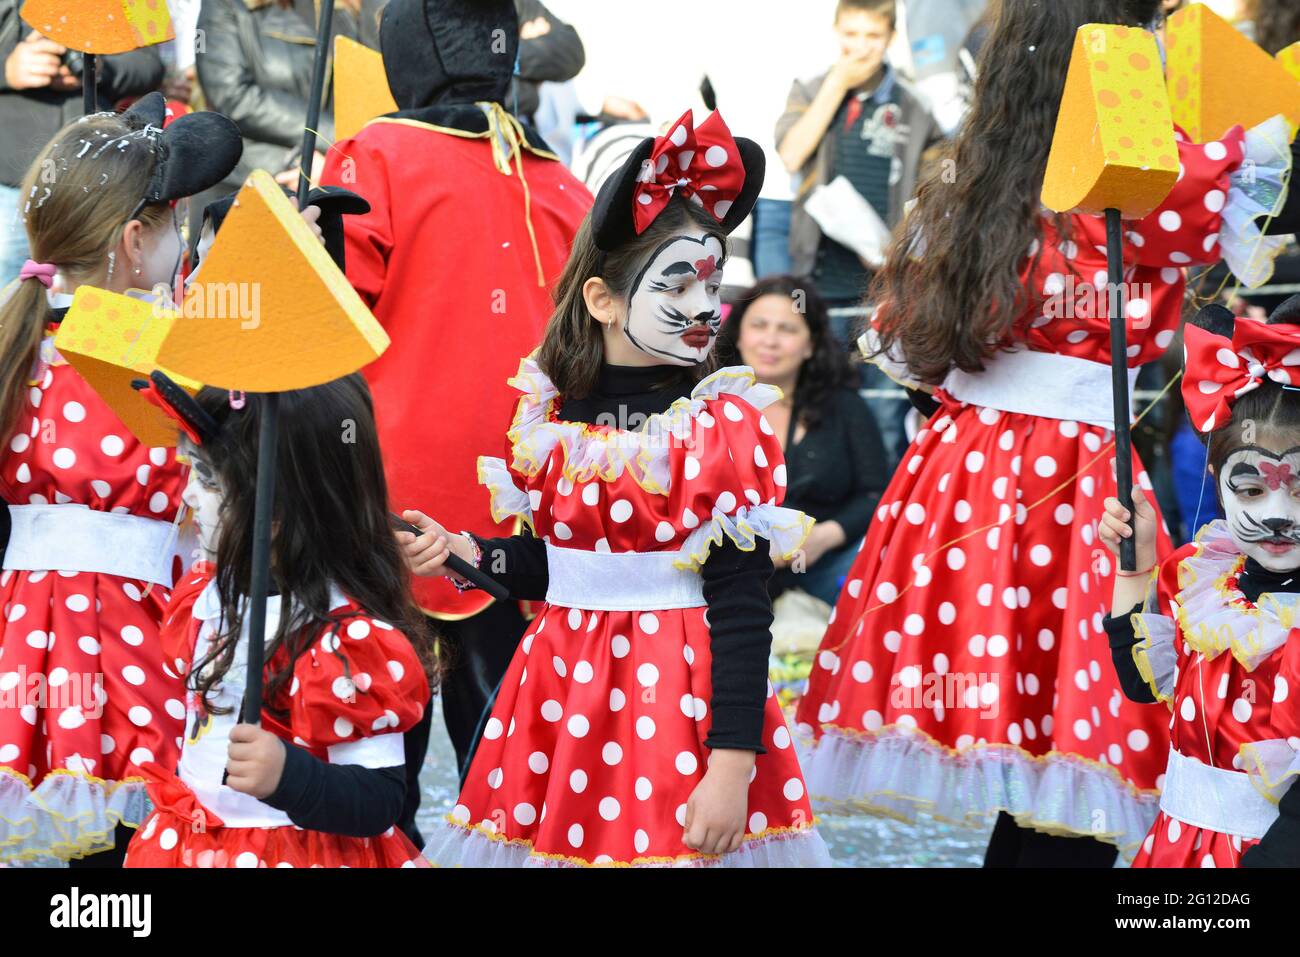 NIÑOS DE COLORES, PAPHOS CARNAVAL, PAPHOS, CHIPRE. FEBRERO, 2014. Los coloridos trajes de los niños alegran el carnaval festivo Foto de stock